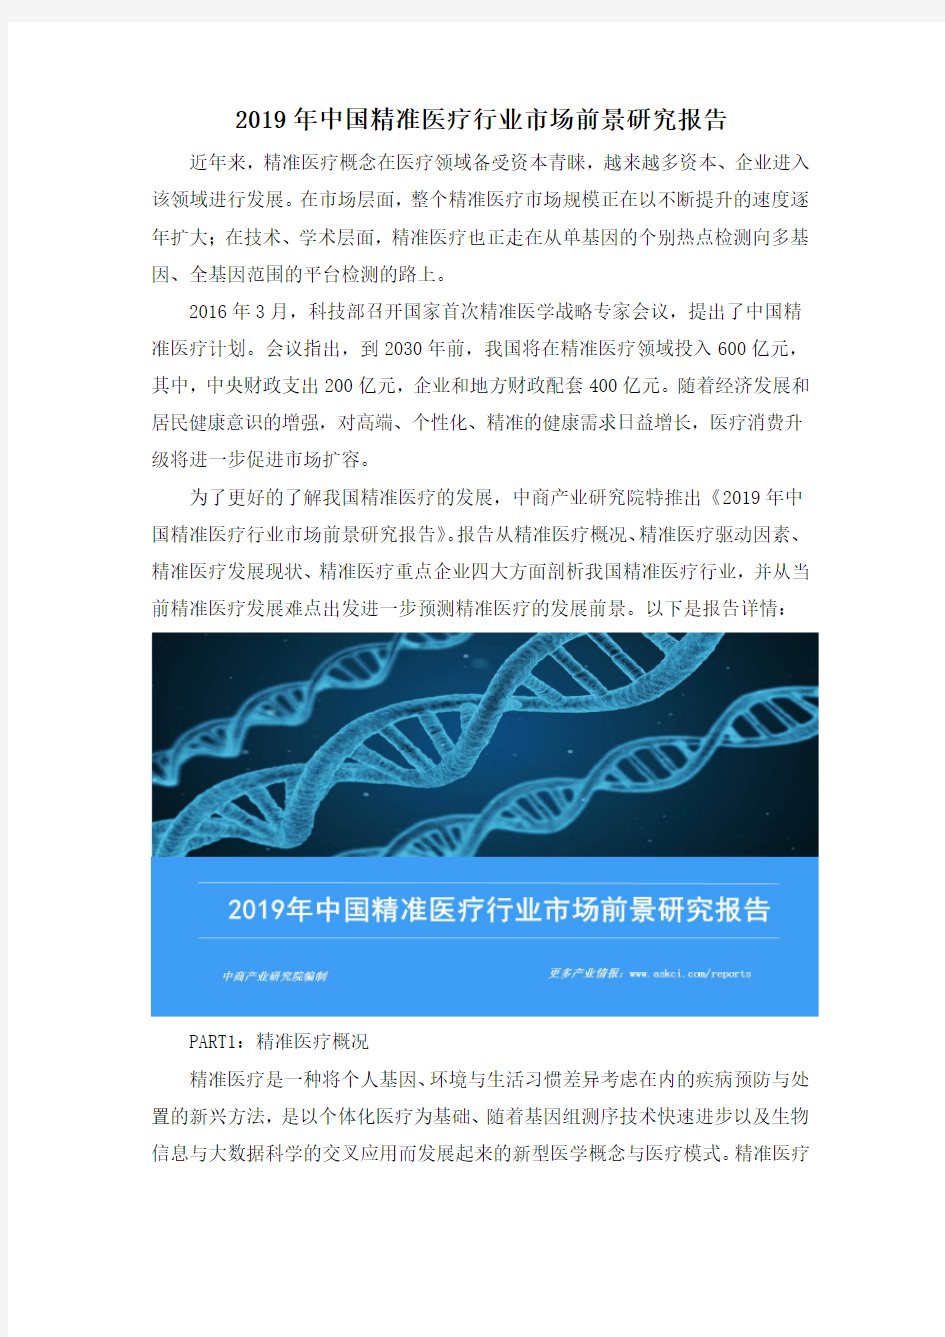 2019年中国精准医疗行业市场前景研究报告